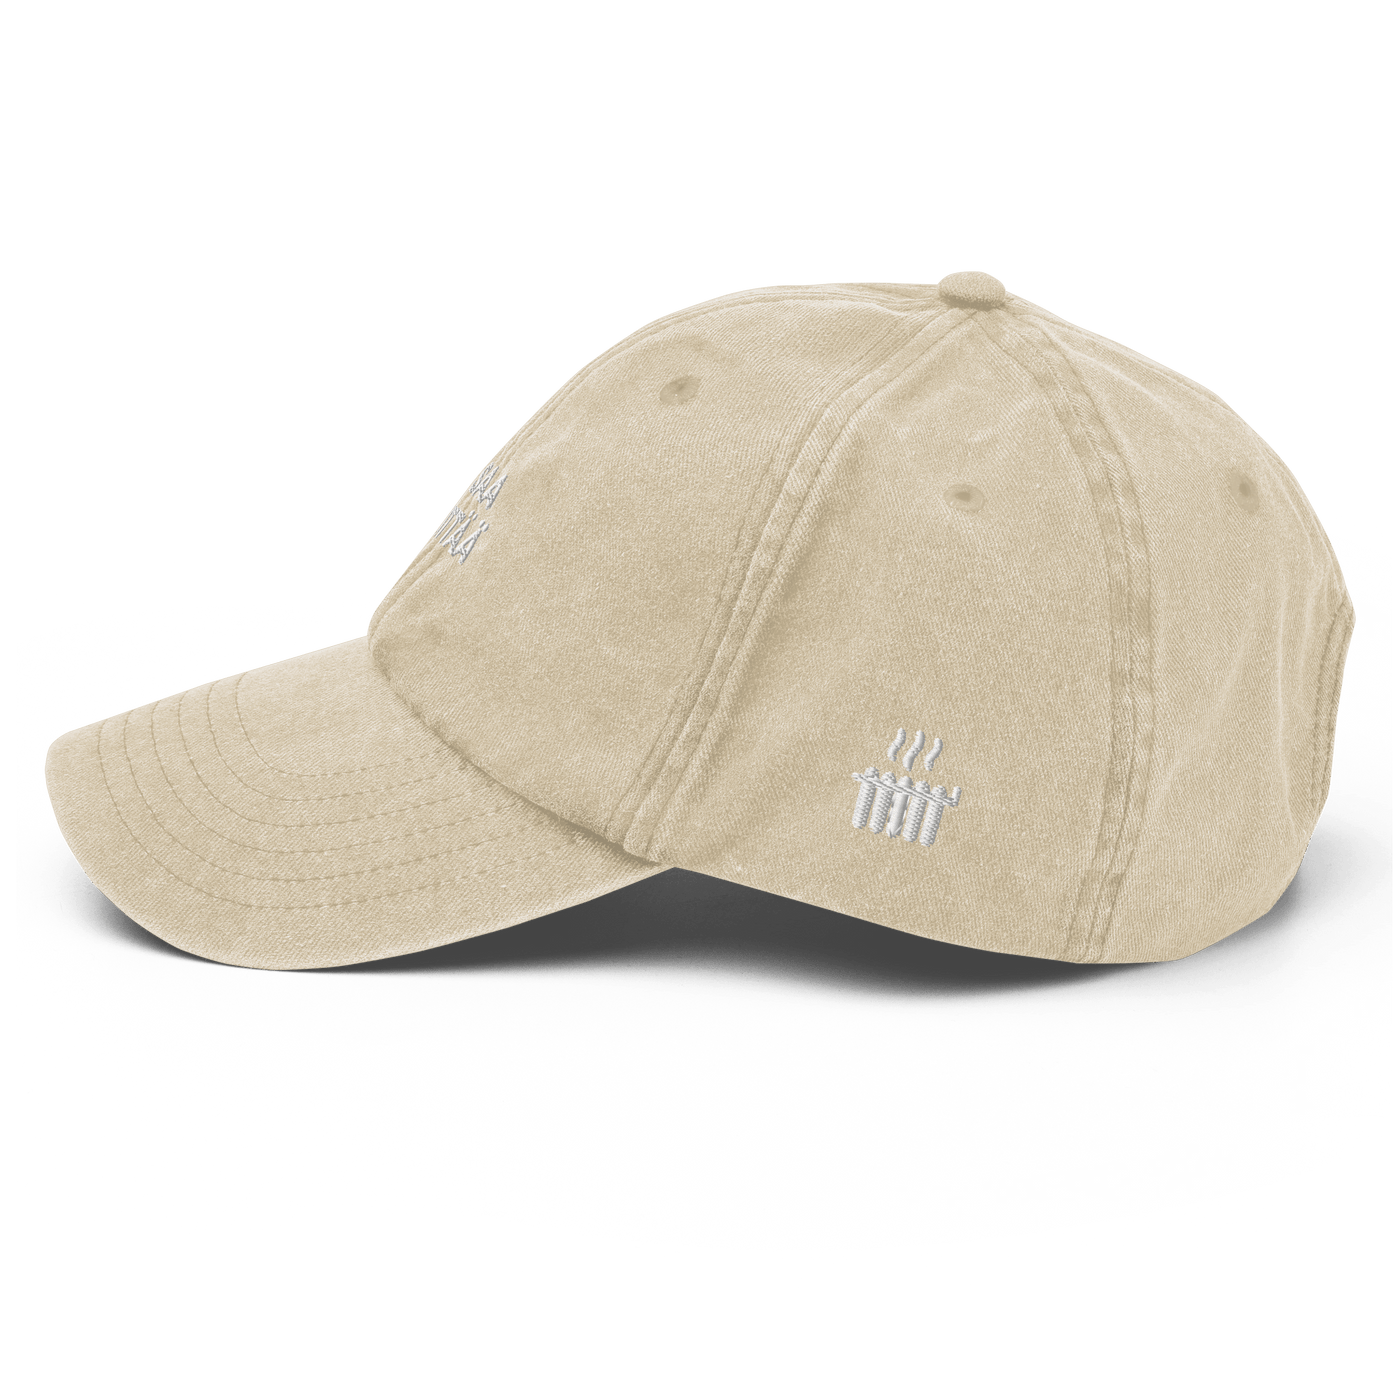 EI SAA PEITTÄÄ - Vintage Hat - Vintage Stone - - Just Another Cap Store